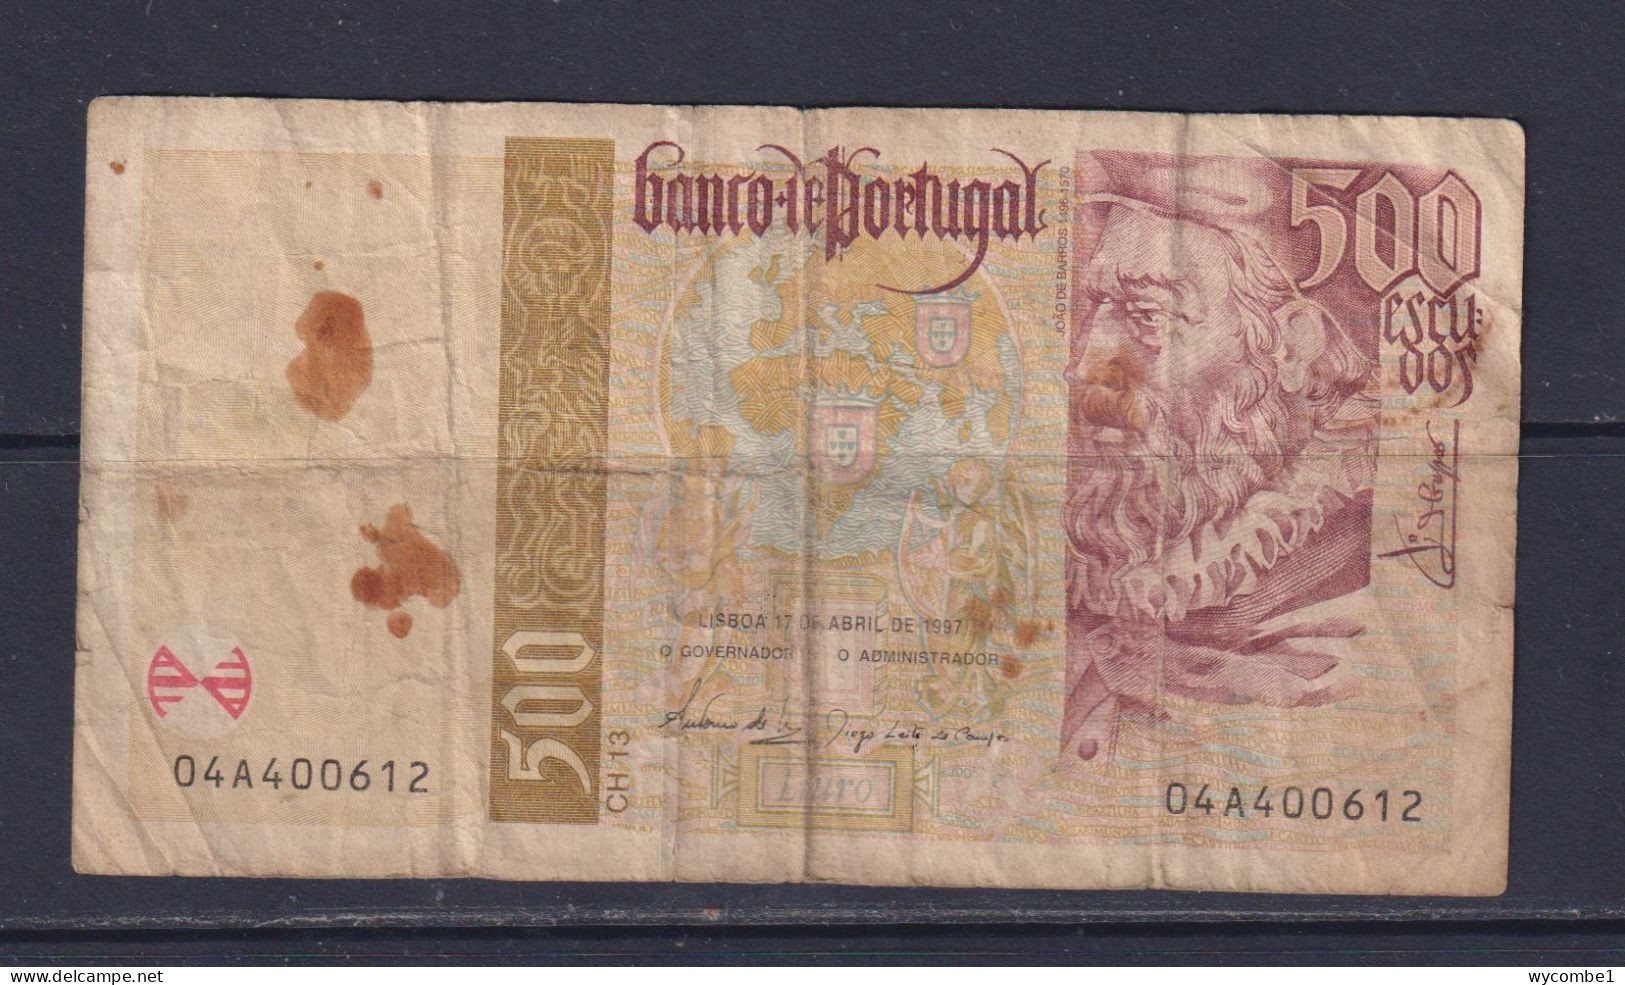 PORTUGAL  - 1997 500 Escudos Circulated Banknote - Portugal